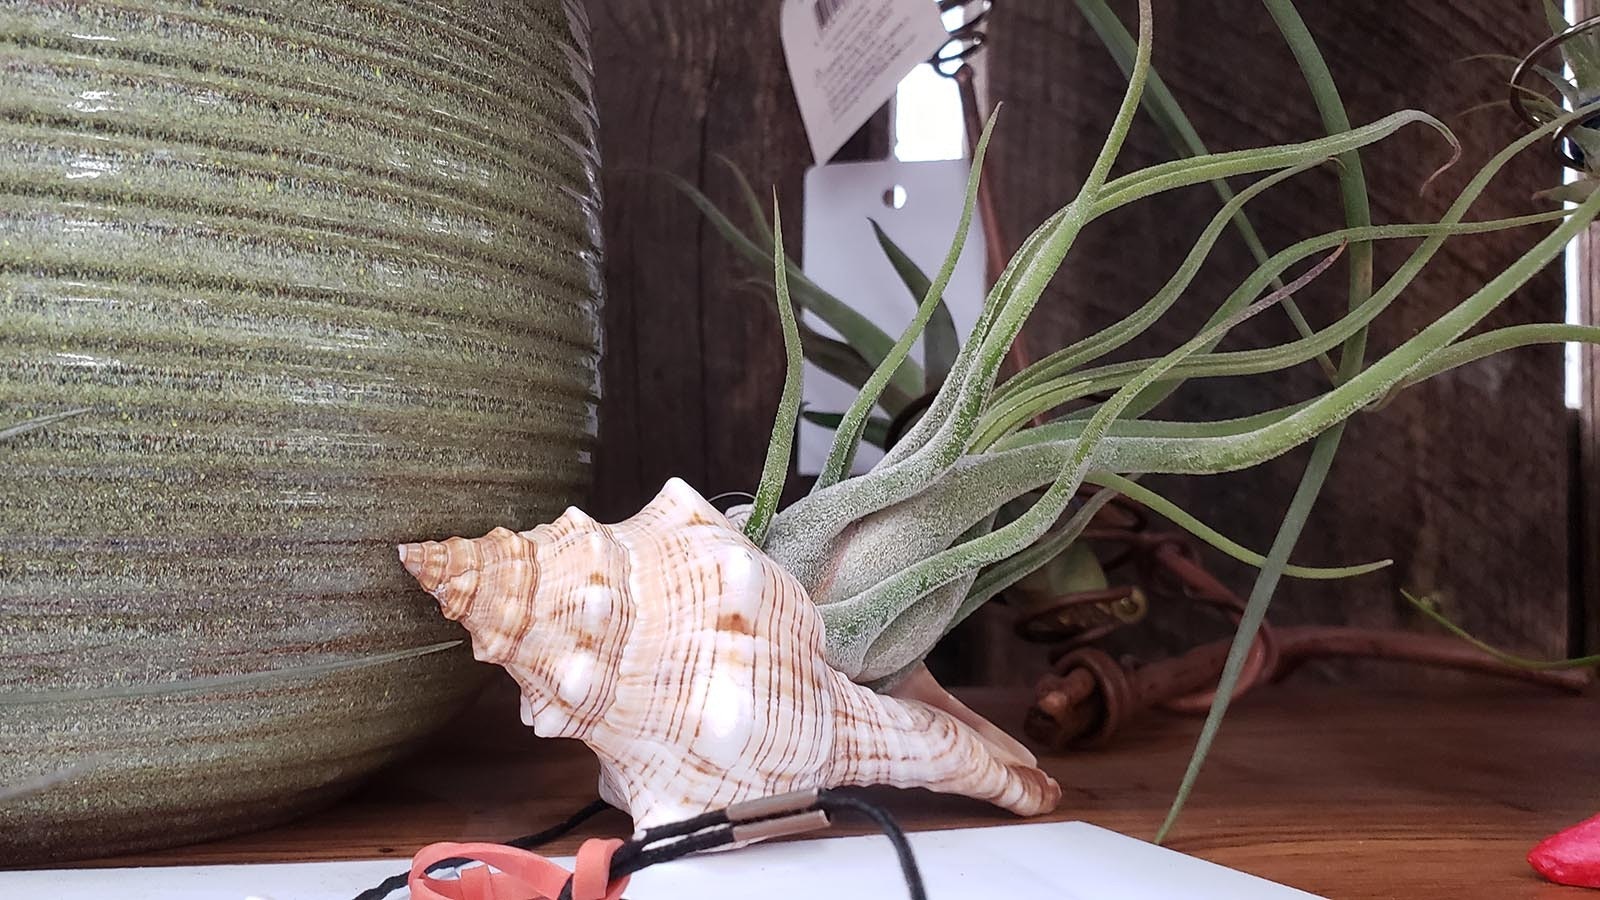 An air plant grows in a seashell.